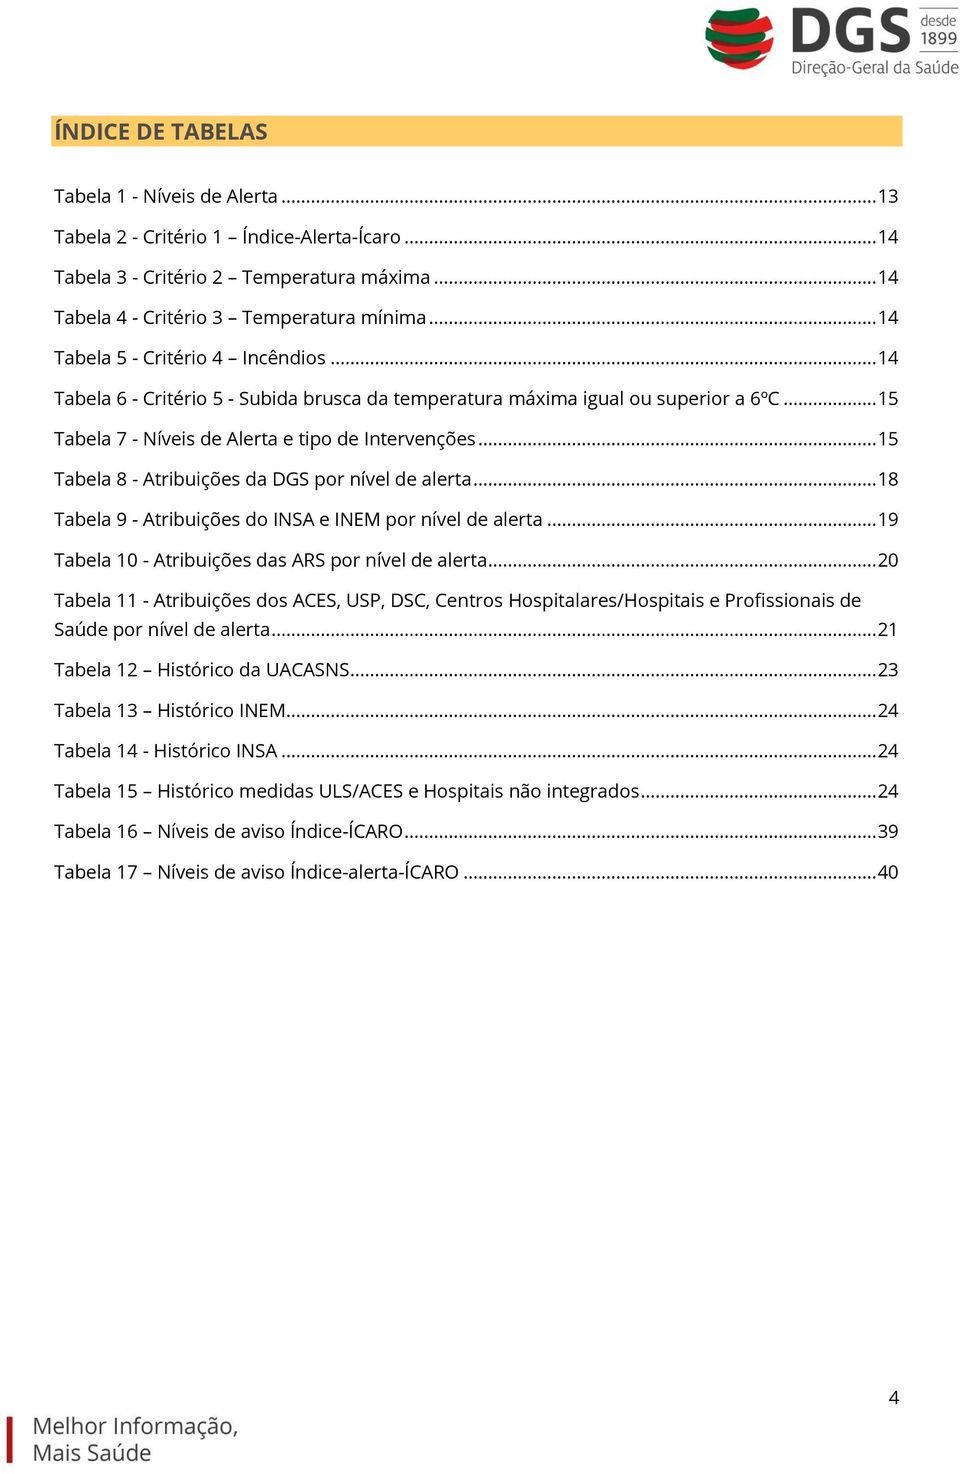 .. 15 Tabela 8 - Atribuições da DGS por nível de alerta... 18 Tabela 9 - Atribuições do INSA e INEM por nível de alerta... 19 Tabela 10 - Atribuições das ARS por nível de alerta.